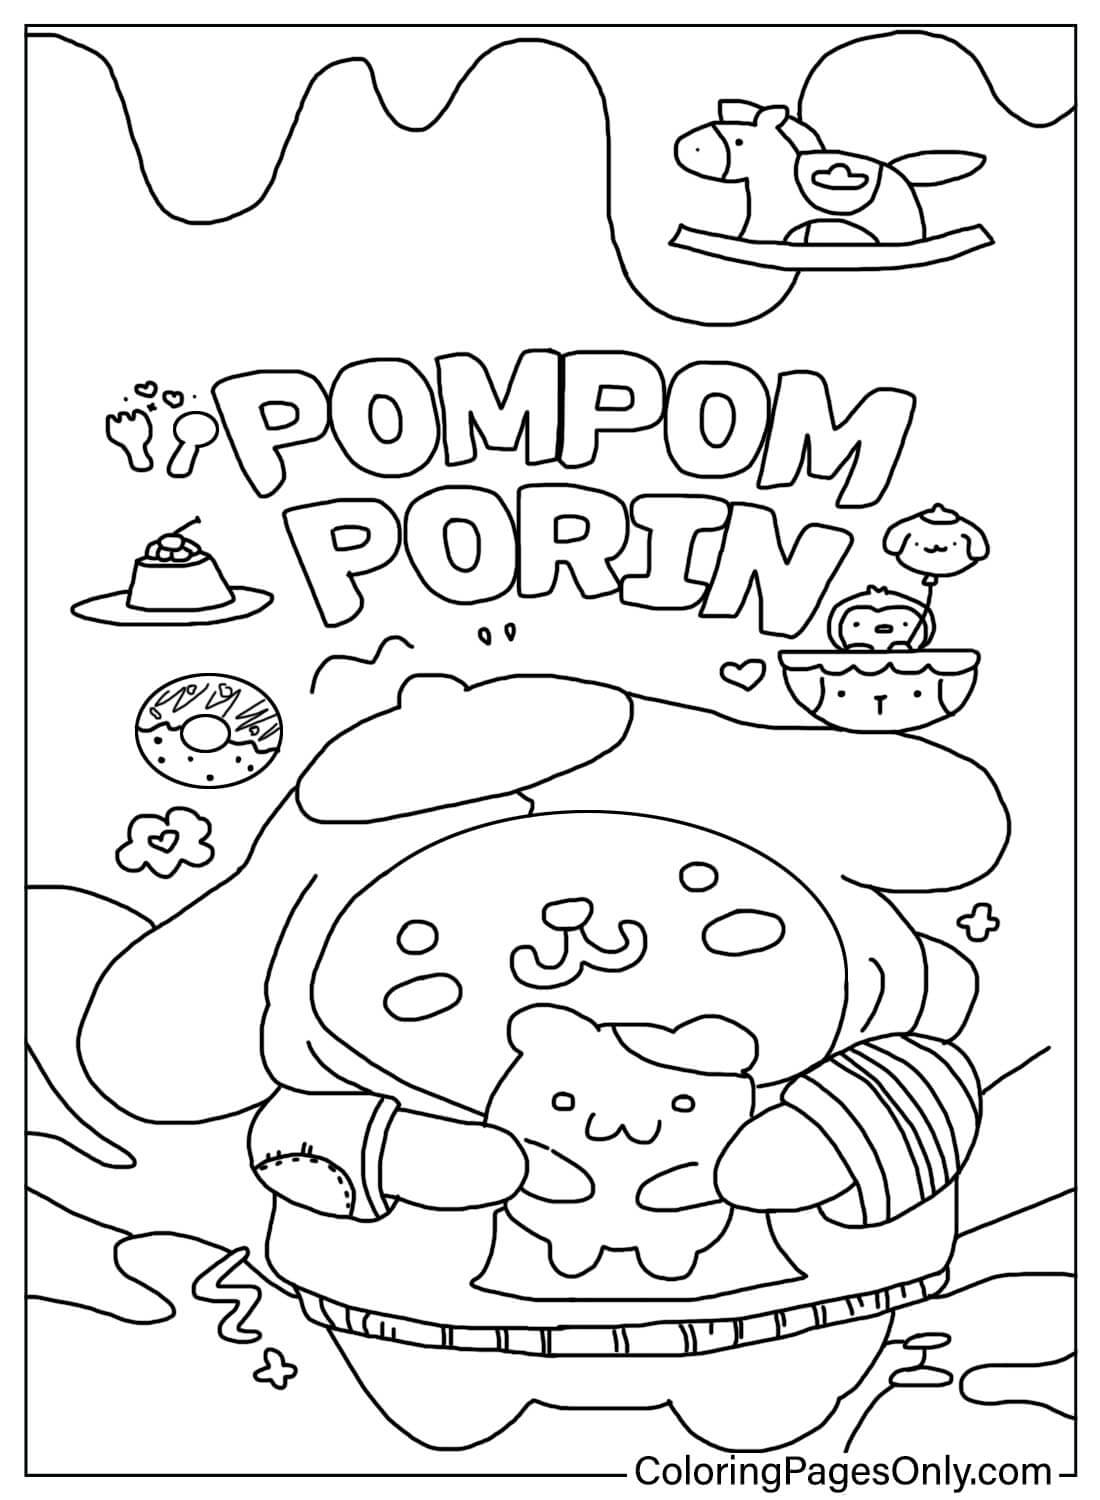 Раскраска Помпонпурин для детей из Pompompurin